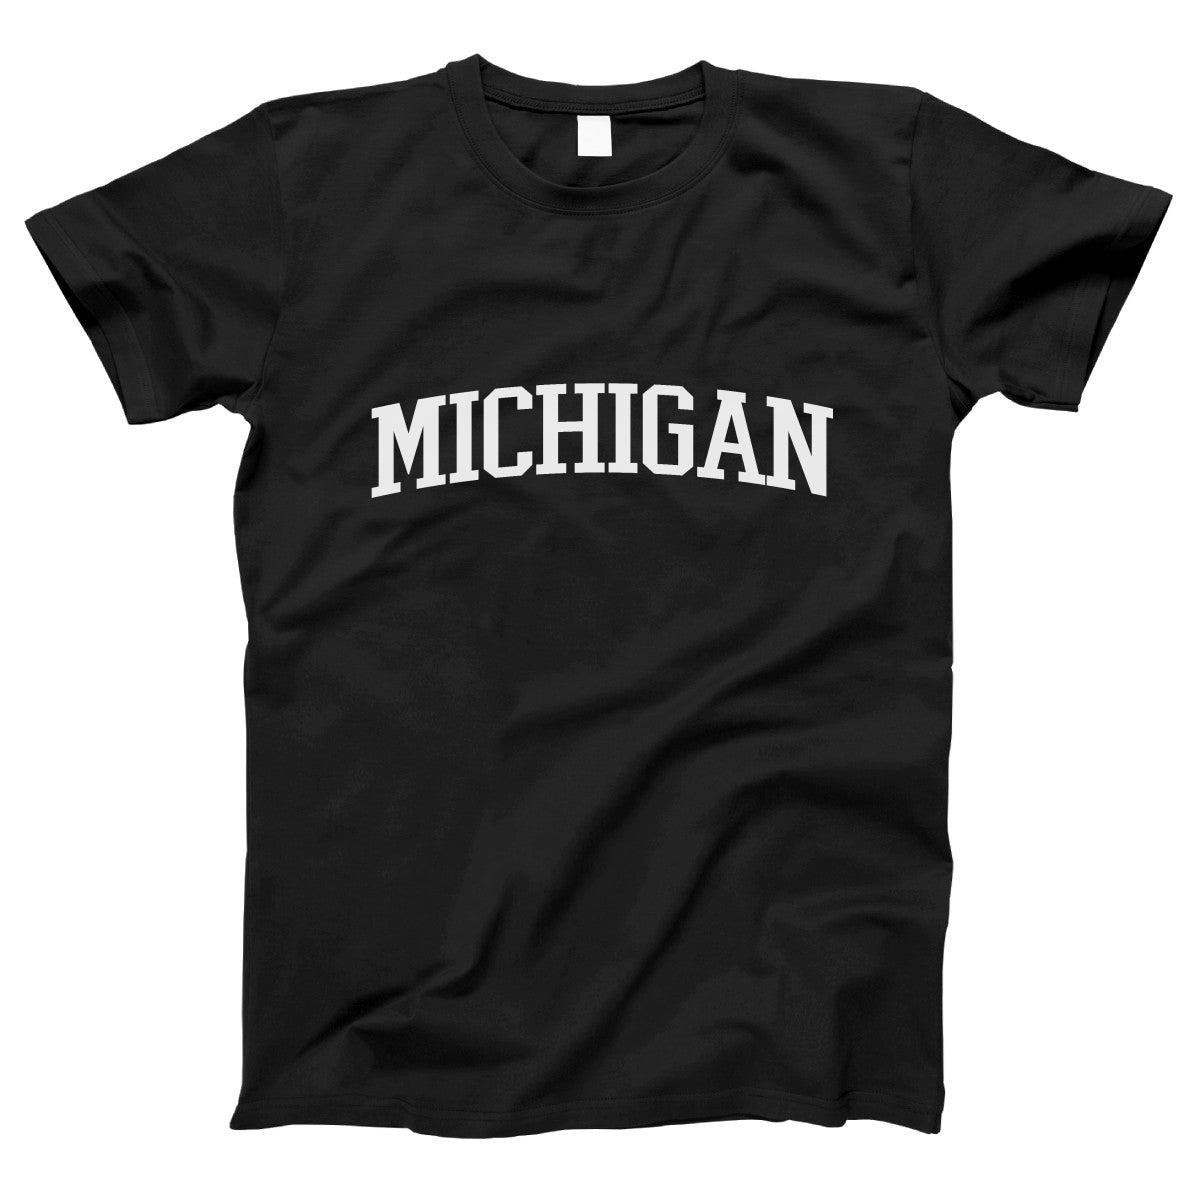 Michigan Women's T-shirt